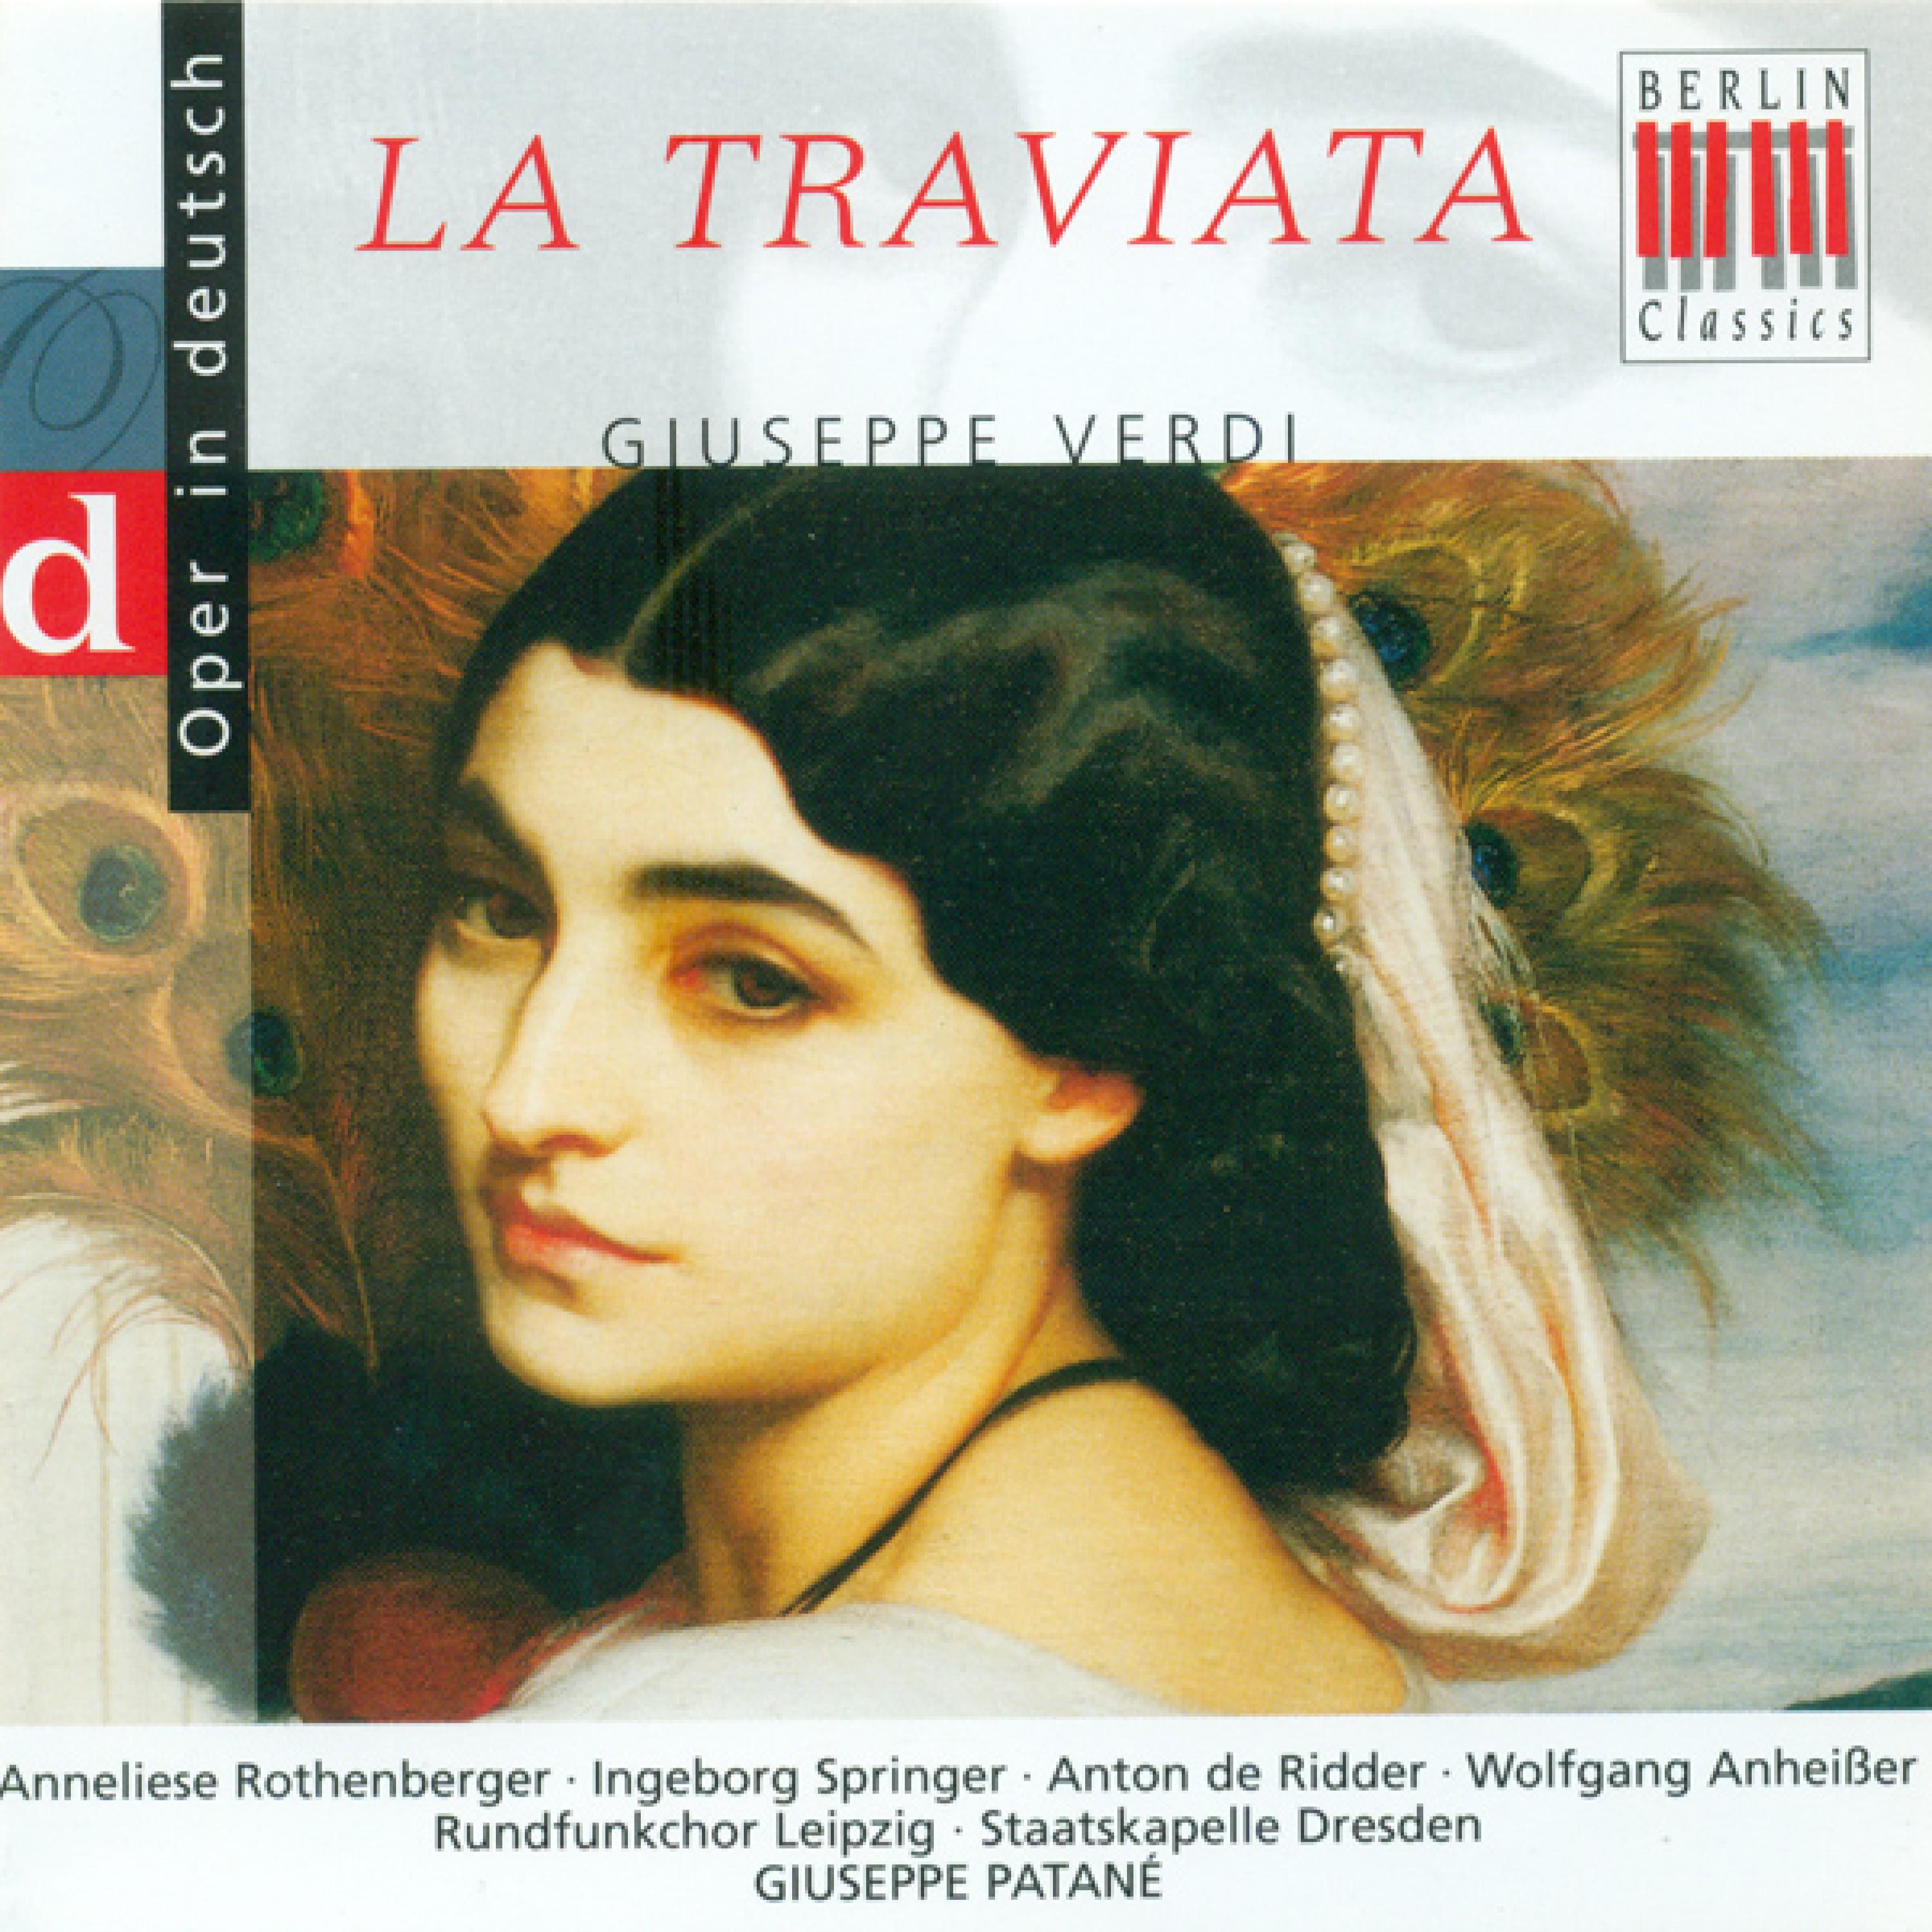 La Traviata, Act I: " Auf, trinket in vollen Zü gen"